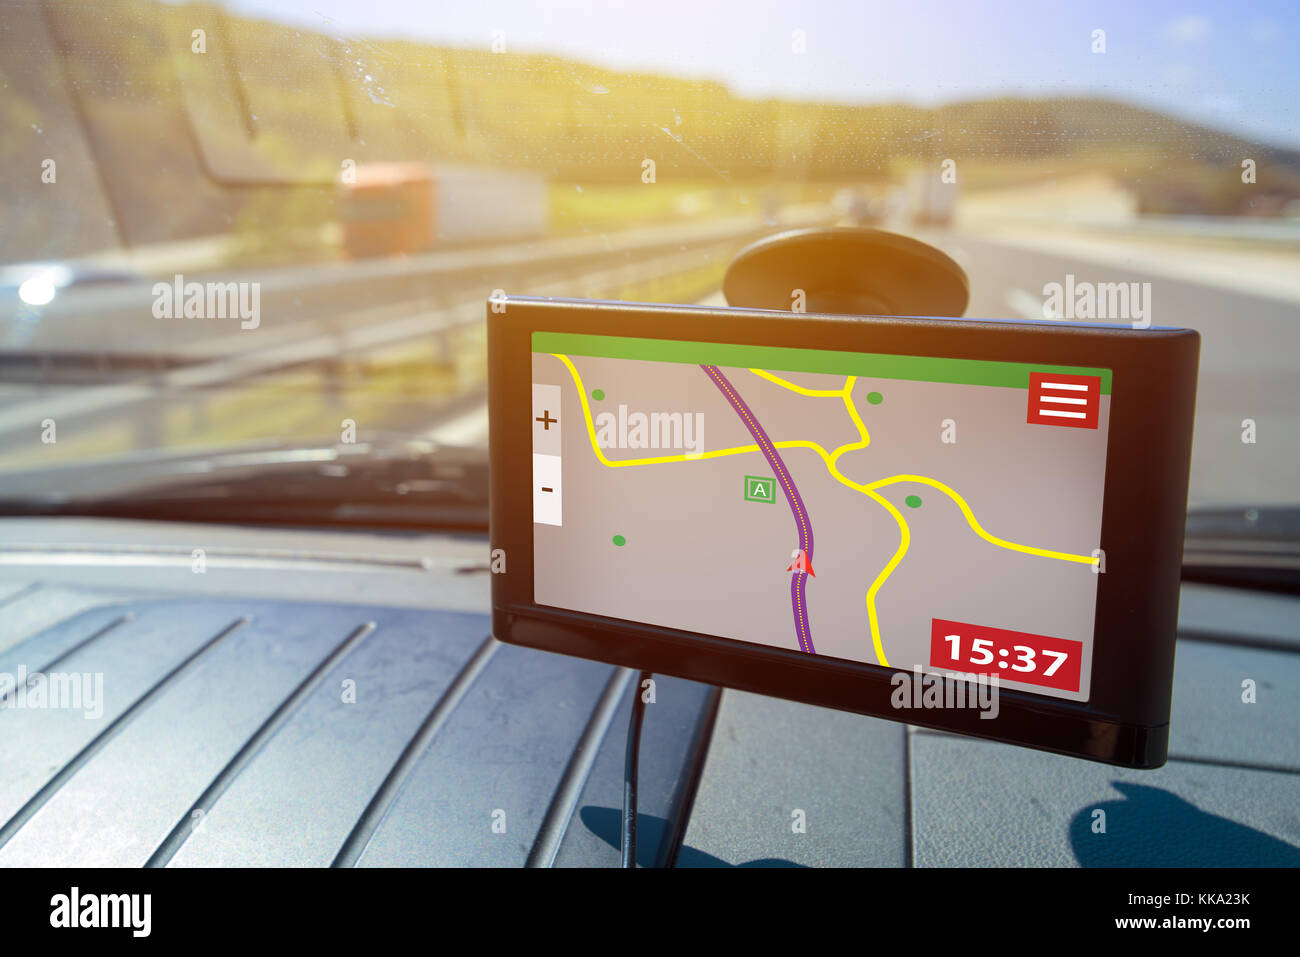 Système de positionnement global (GPS) navigation auto, aide et assistance à l'orientation sur route Banque D'Images